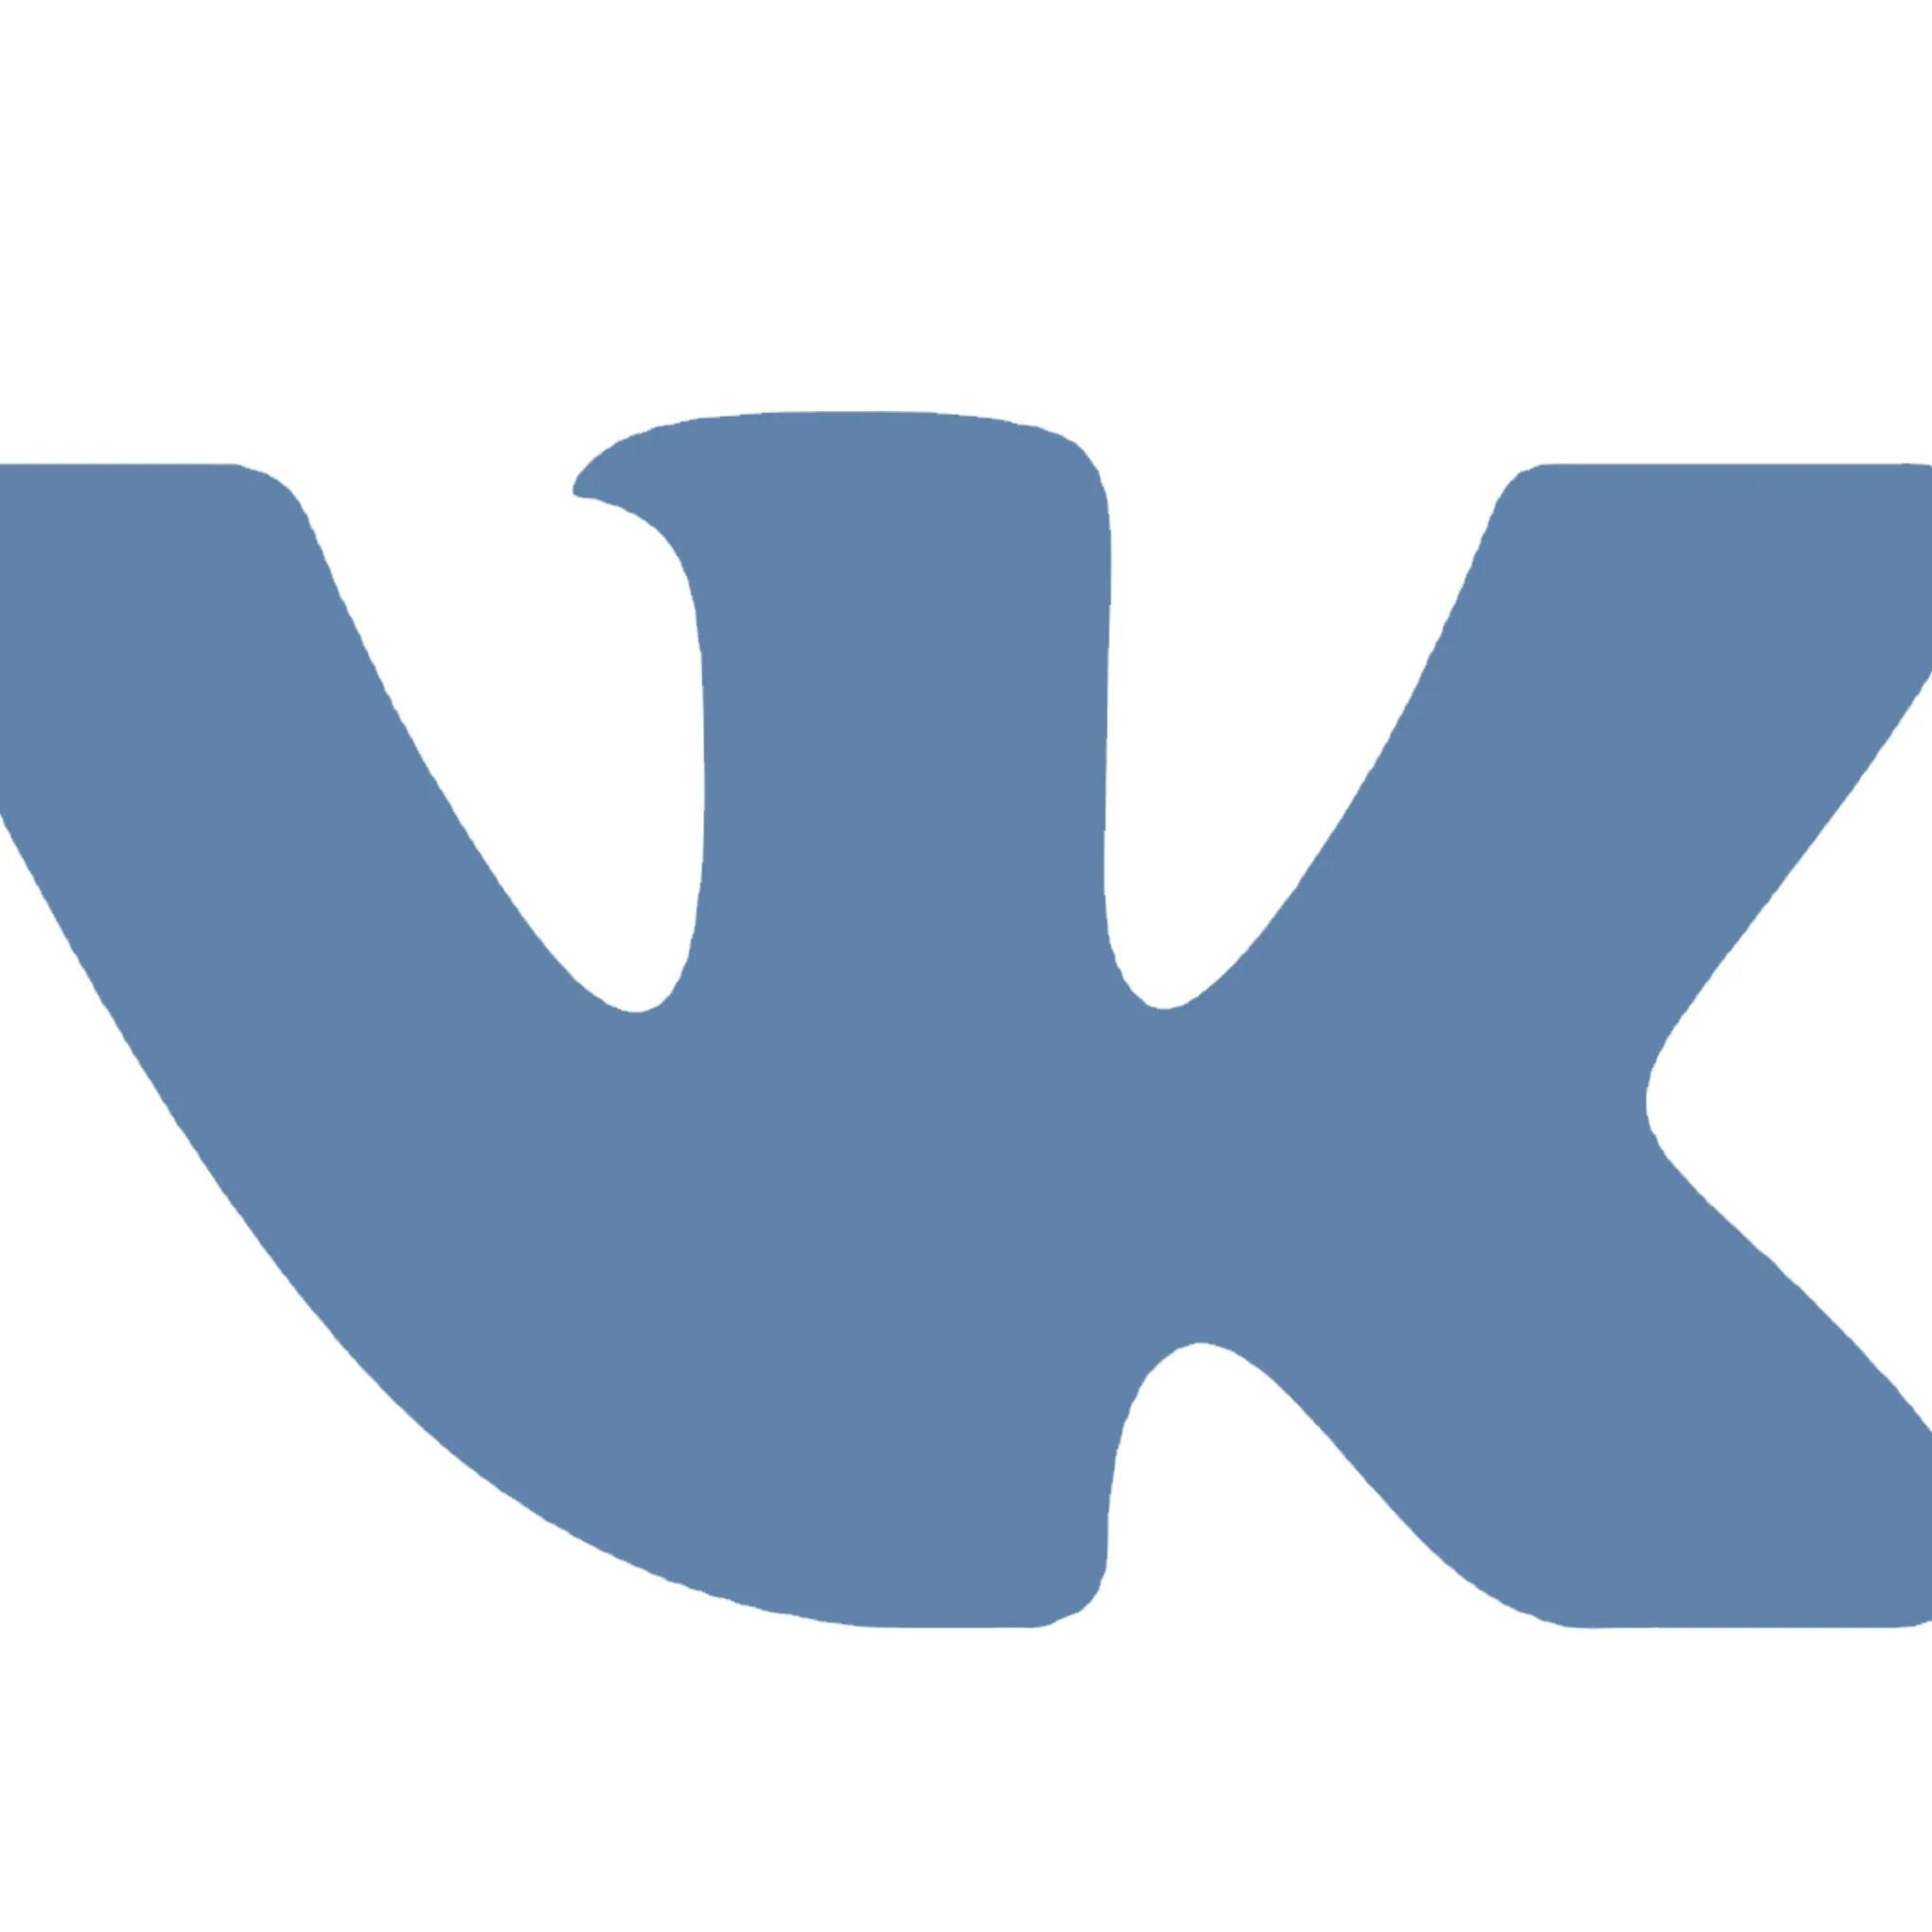 Vk com atomicrust. Иконка ВК. Логотип ВК svg. Иконка ВК зеленая. Значок ВК на прозрачном фоне для визитки.